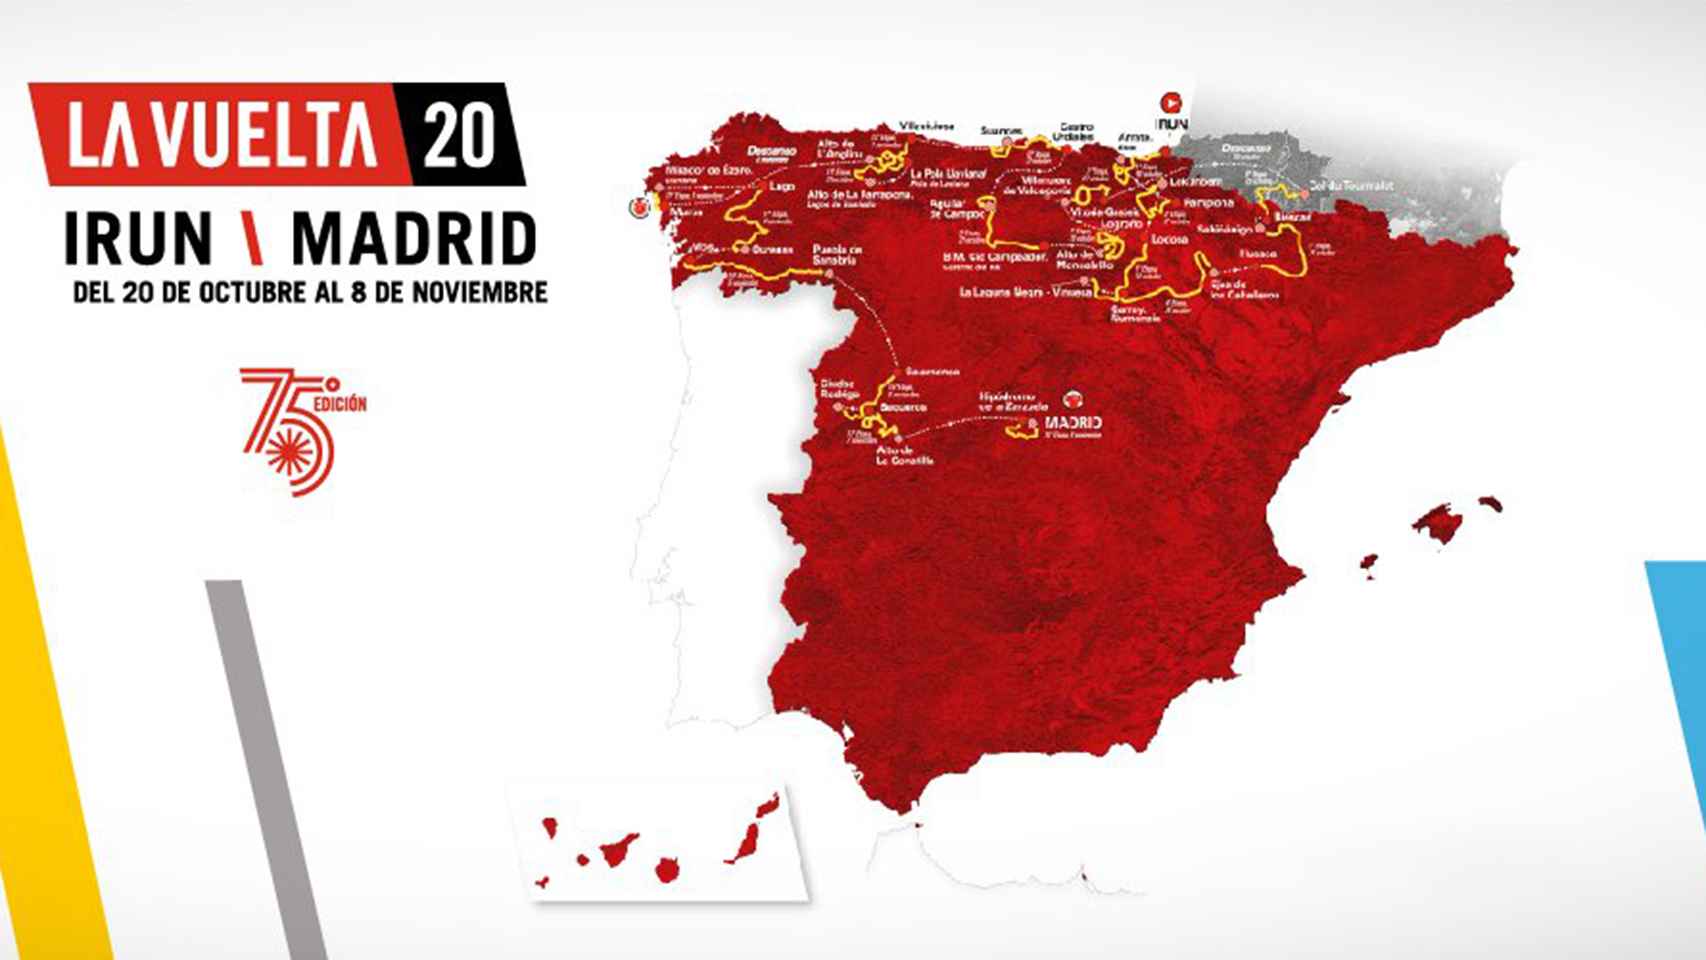 La Vuelta a España 2020